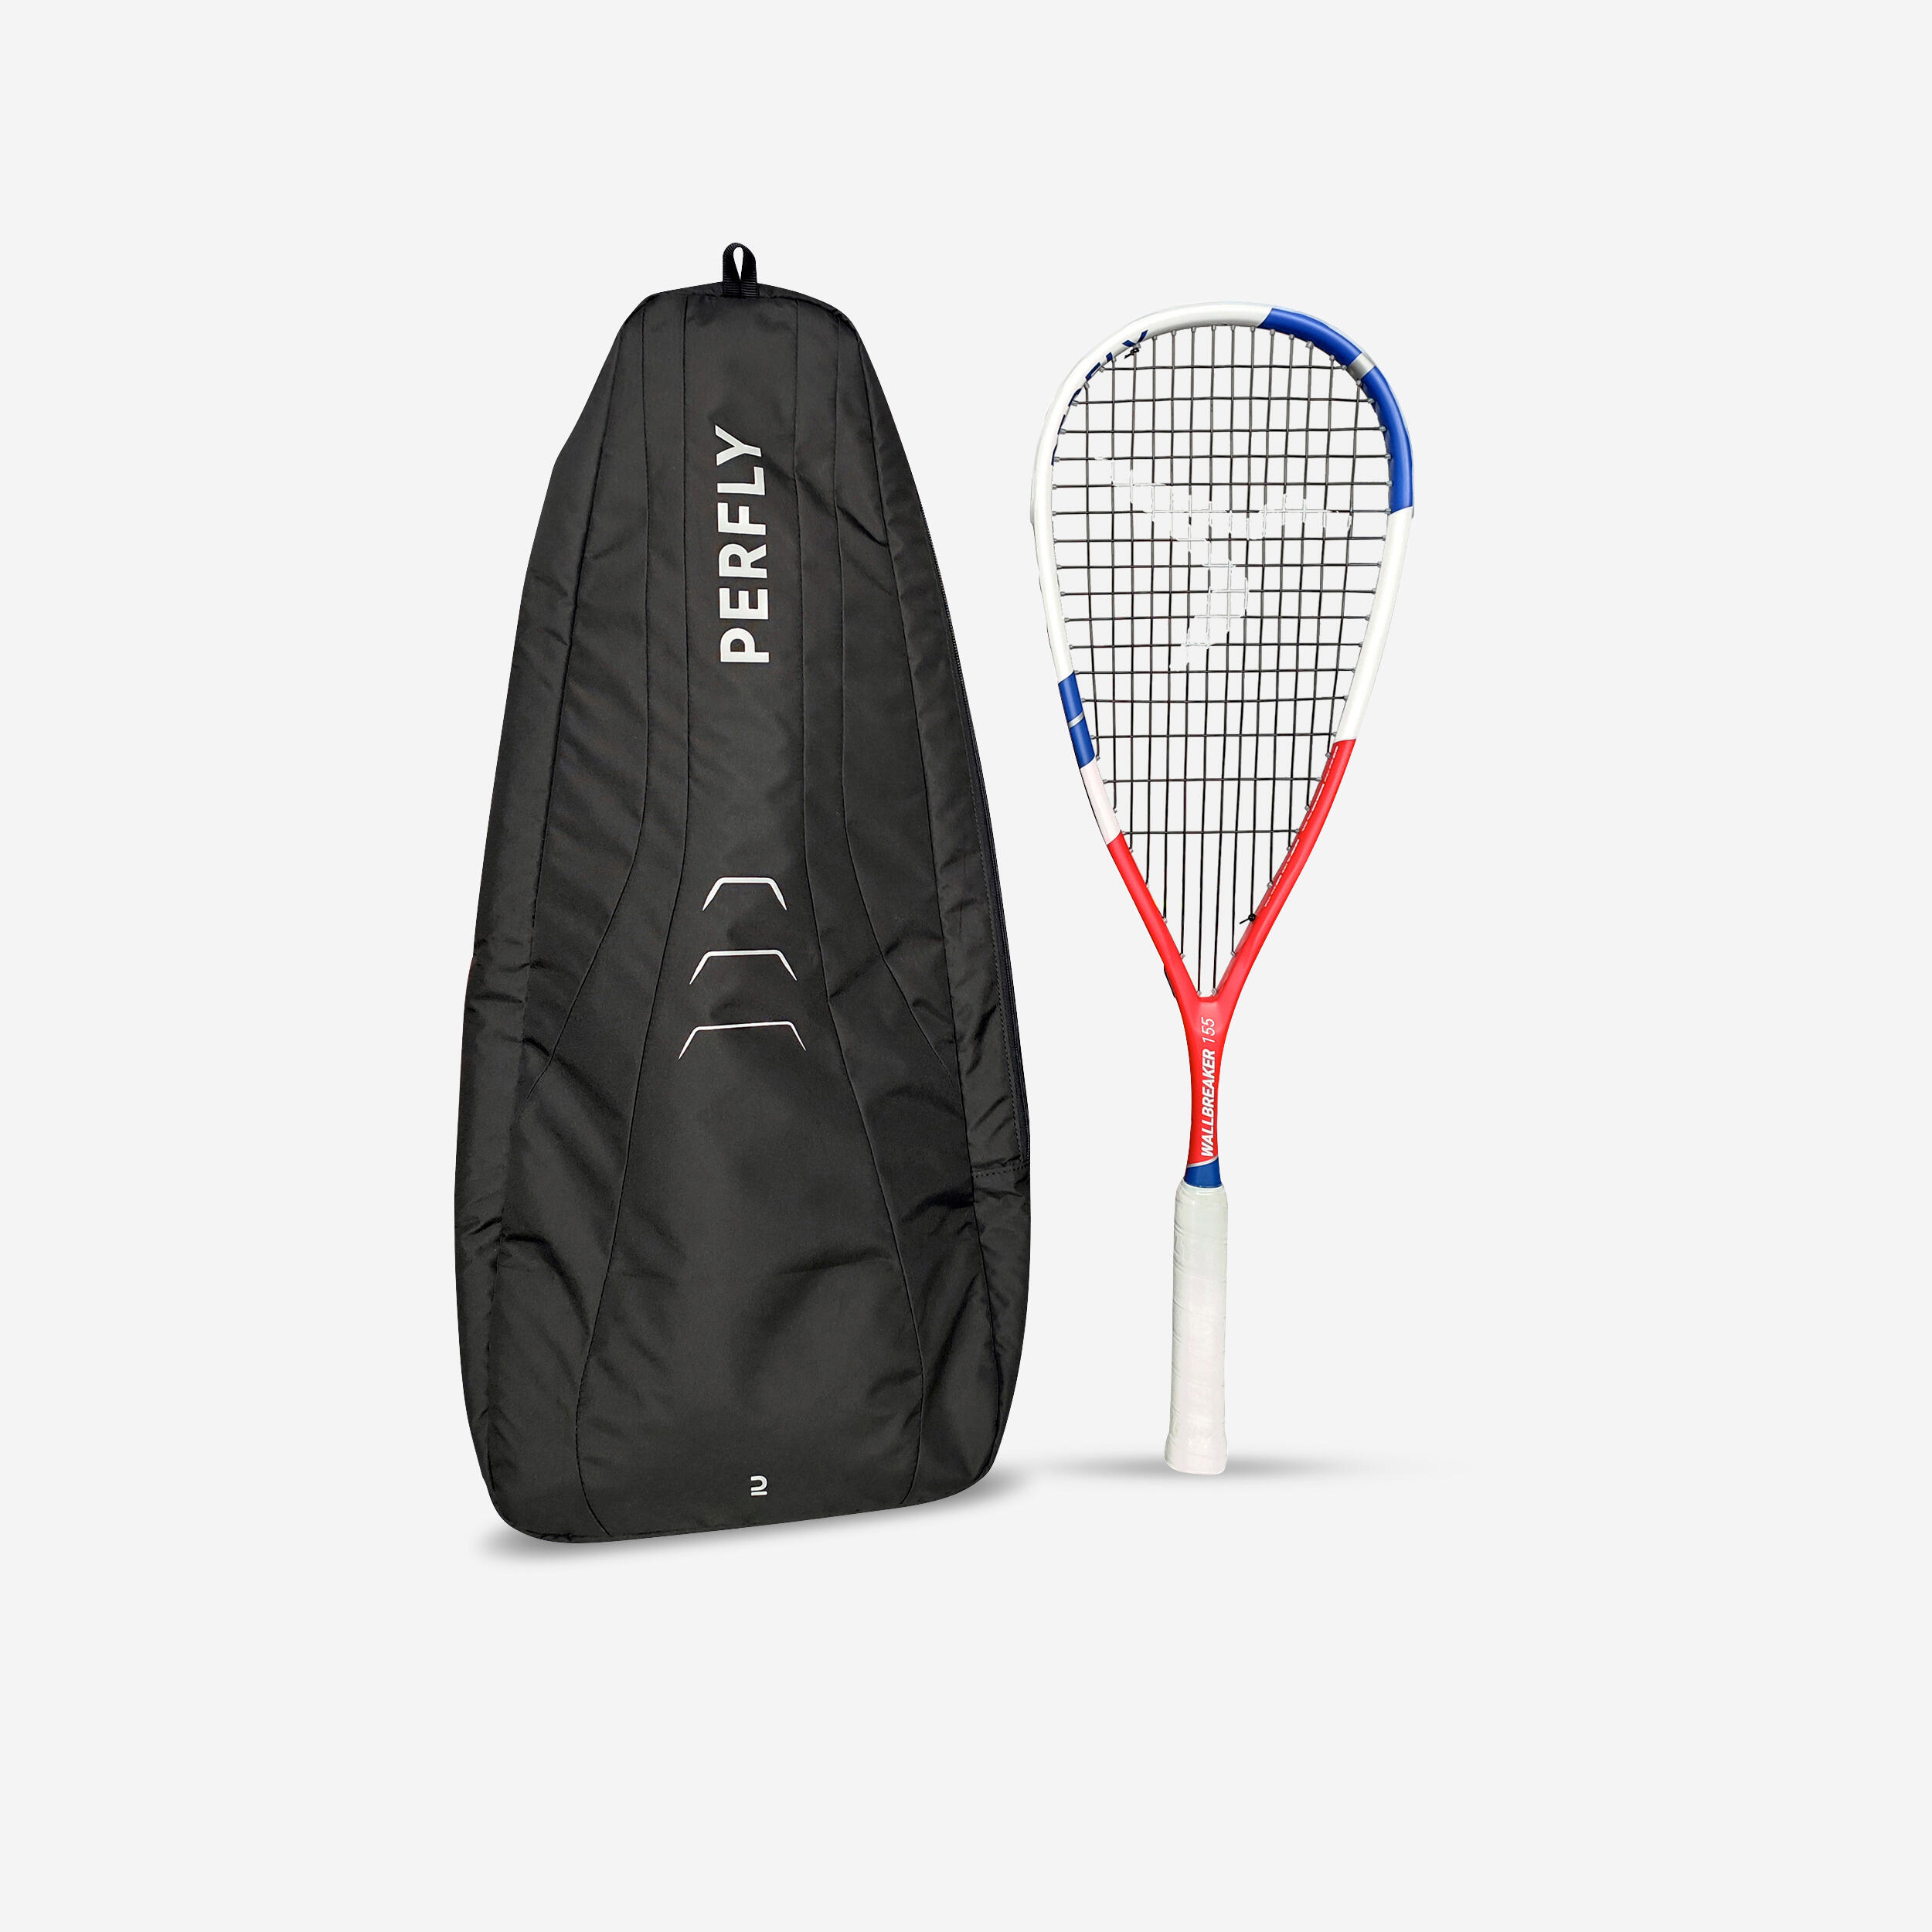 PERFLY Squash Racket Set Wallbreaker 155 (1 Racket & 1 Backpack)